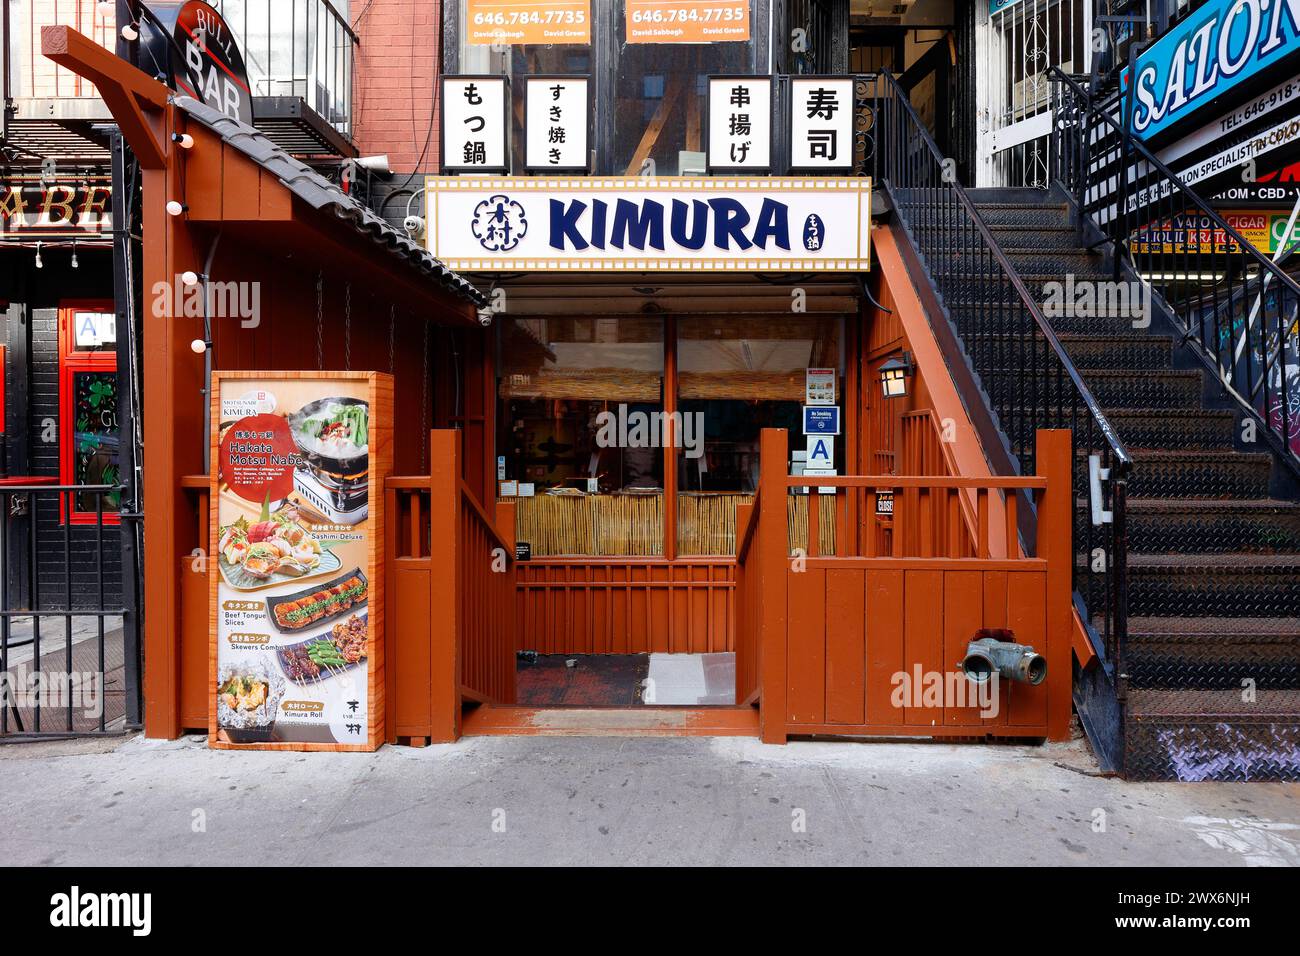 Kimura 木村, 31 St Marks PL, New York, NYC photo d'un restaurant japonais dans le 'Little Tokyo' East Village de Manhattan. Banque D'Images